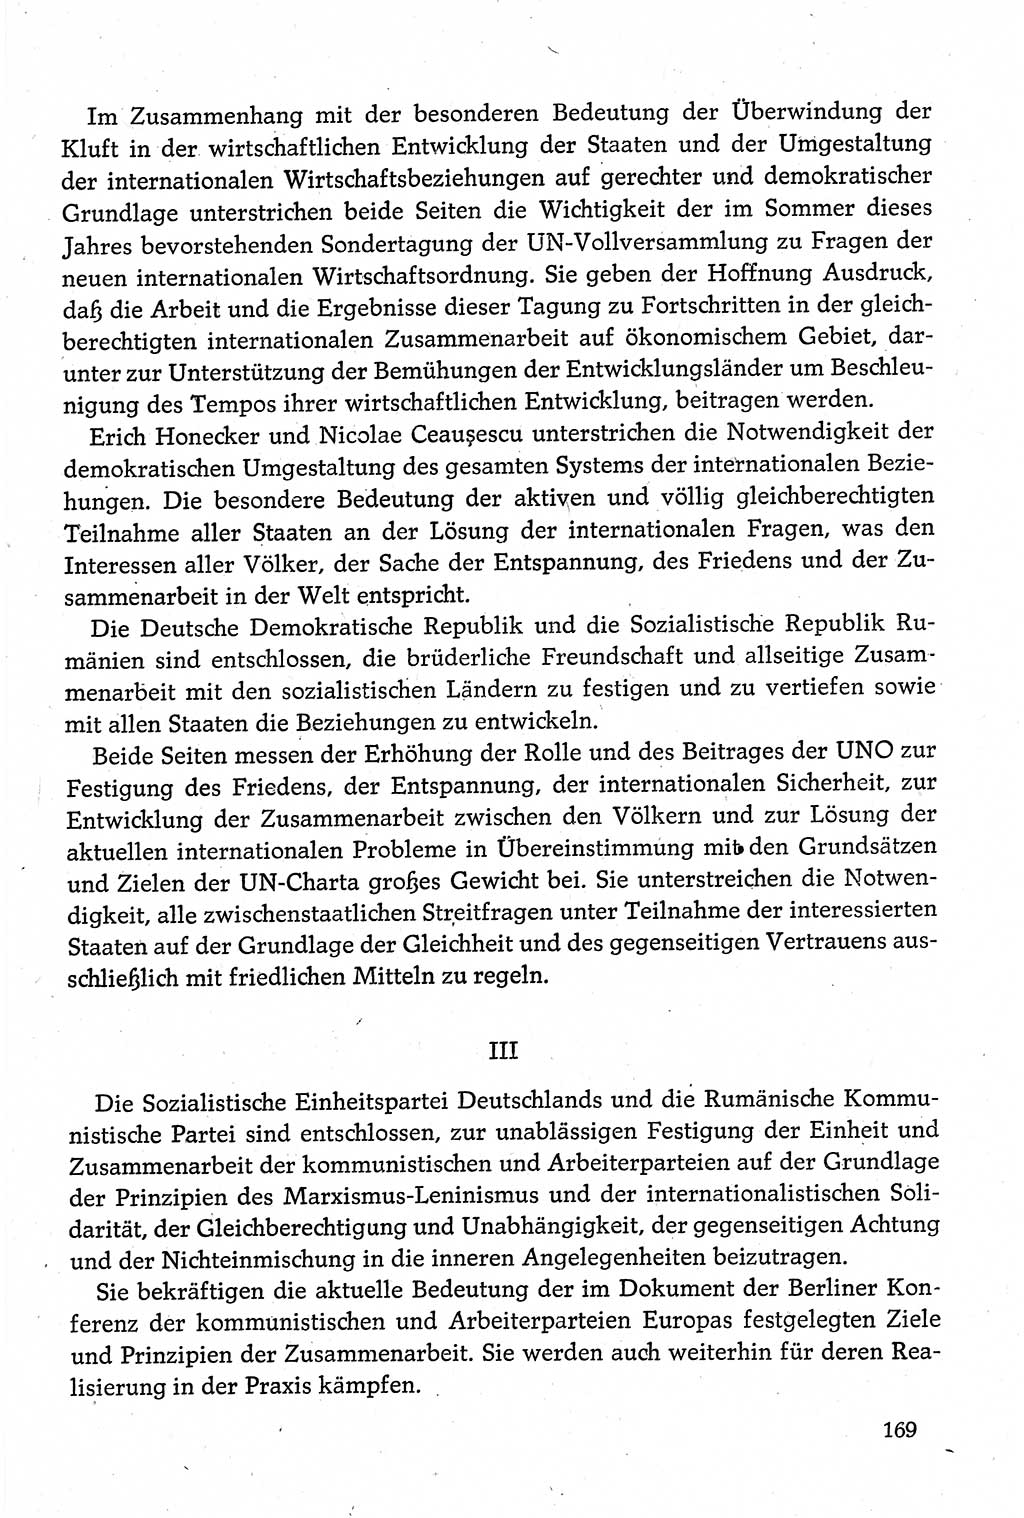 Dokumente der Sozialistischen Einheitspartei Deutschlands (SED) [Deutsche Demokratische Republik (DDR)] 1980-1981, Seite 169 (Dok. SED DDR 1980-1981, S. 169)